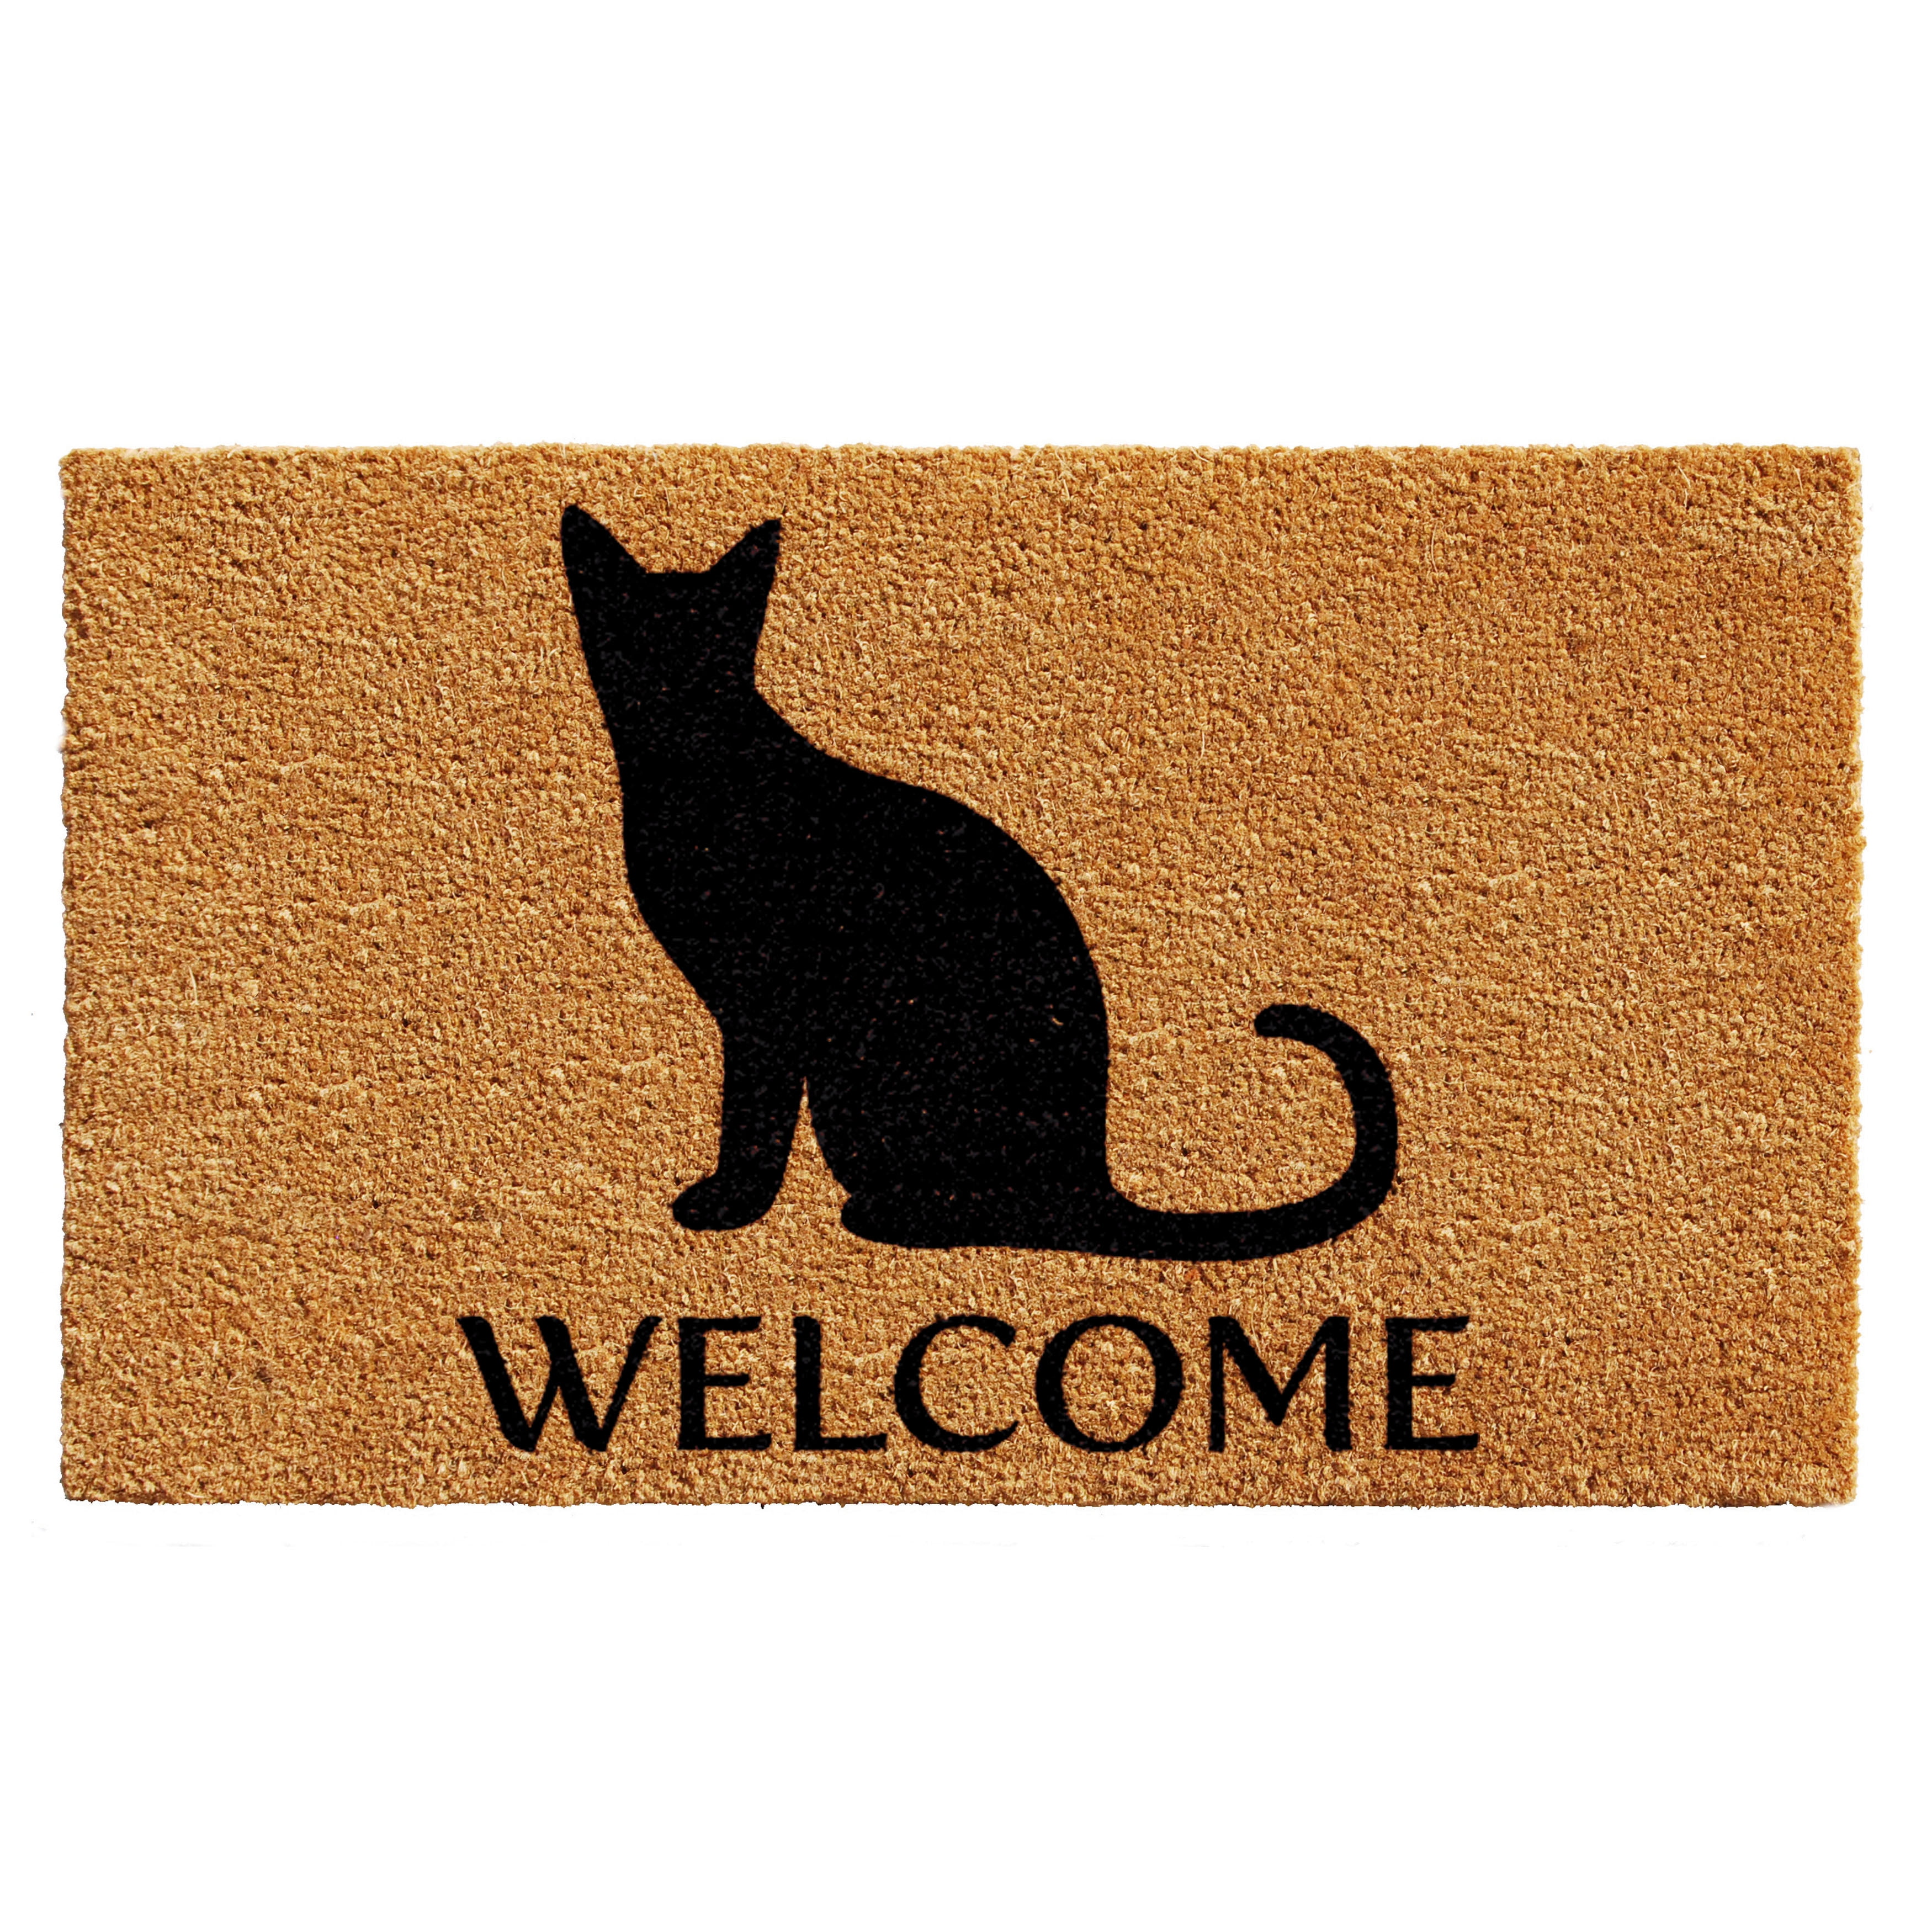 Calloway Mills Black Cat Welcome Door Mat 17 in. x 29 in., Multi